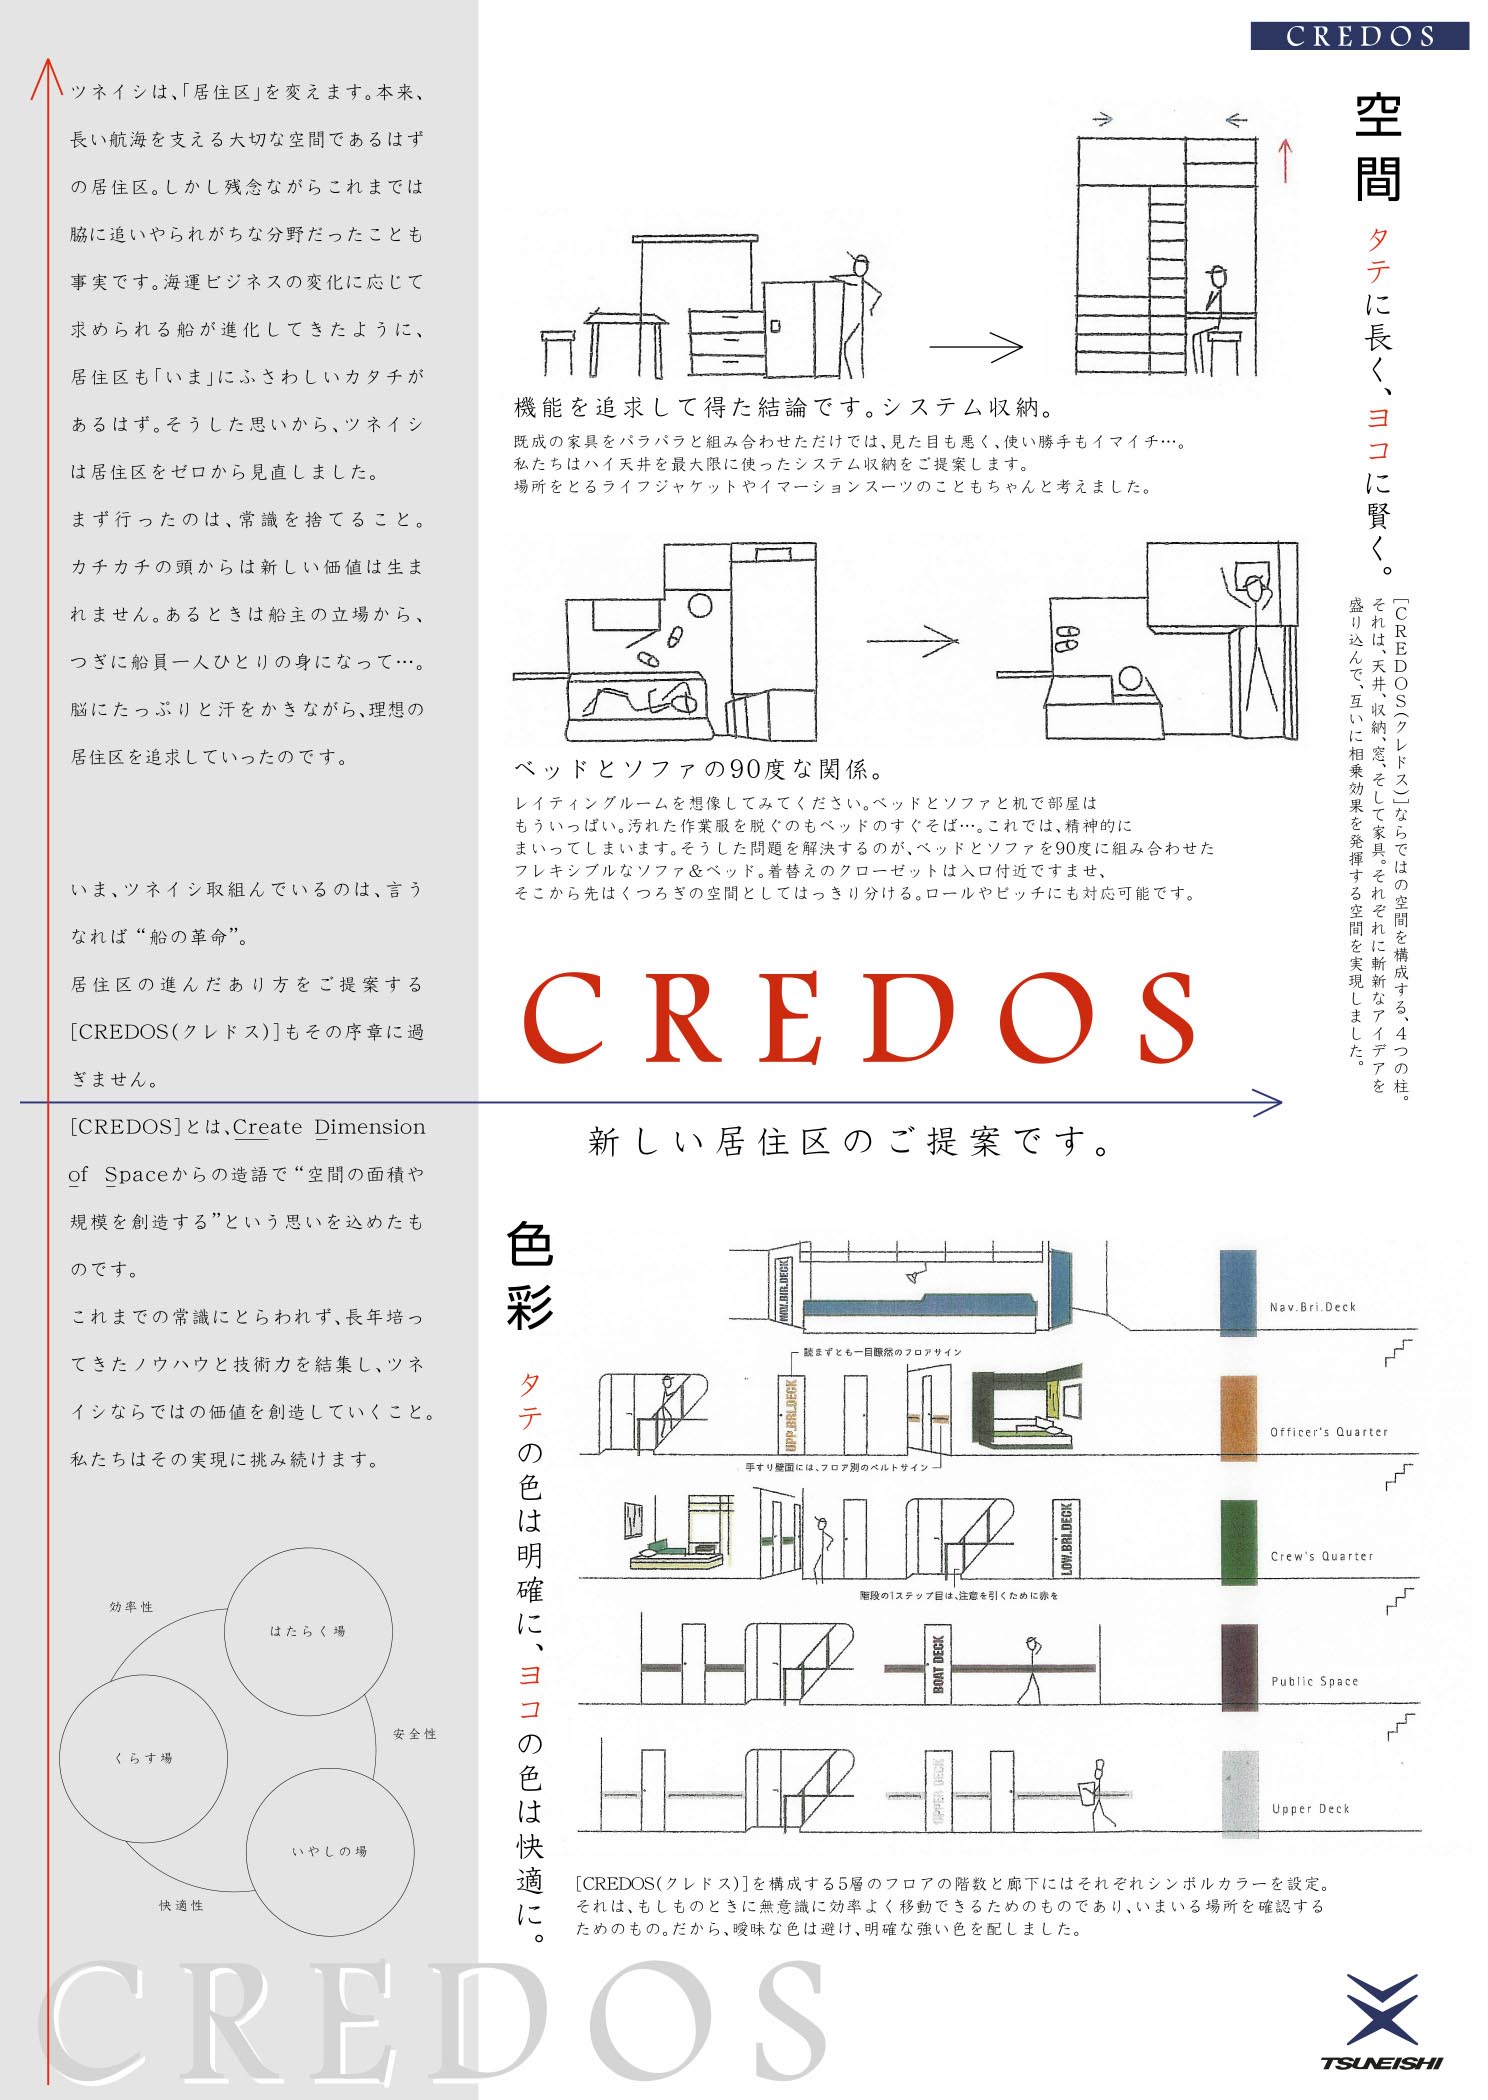 新型居住区credos クレドス の発表 プレスリリース ニュース 常石造船株式会社 Tsuneishi Shipbuilding Co Ltd